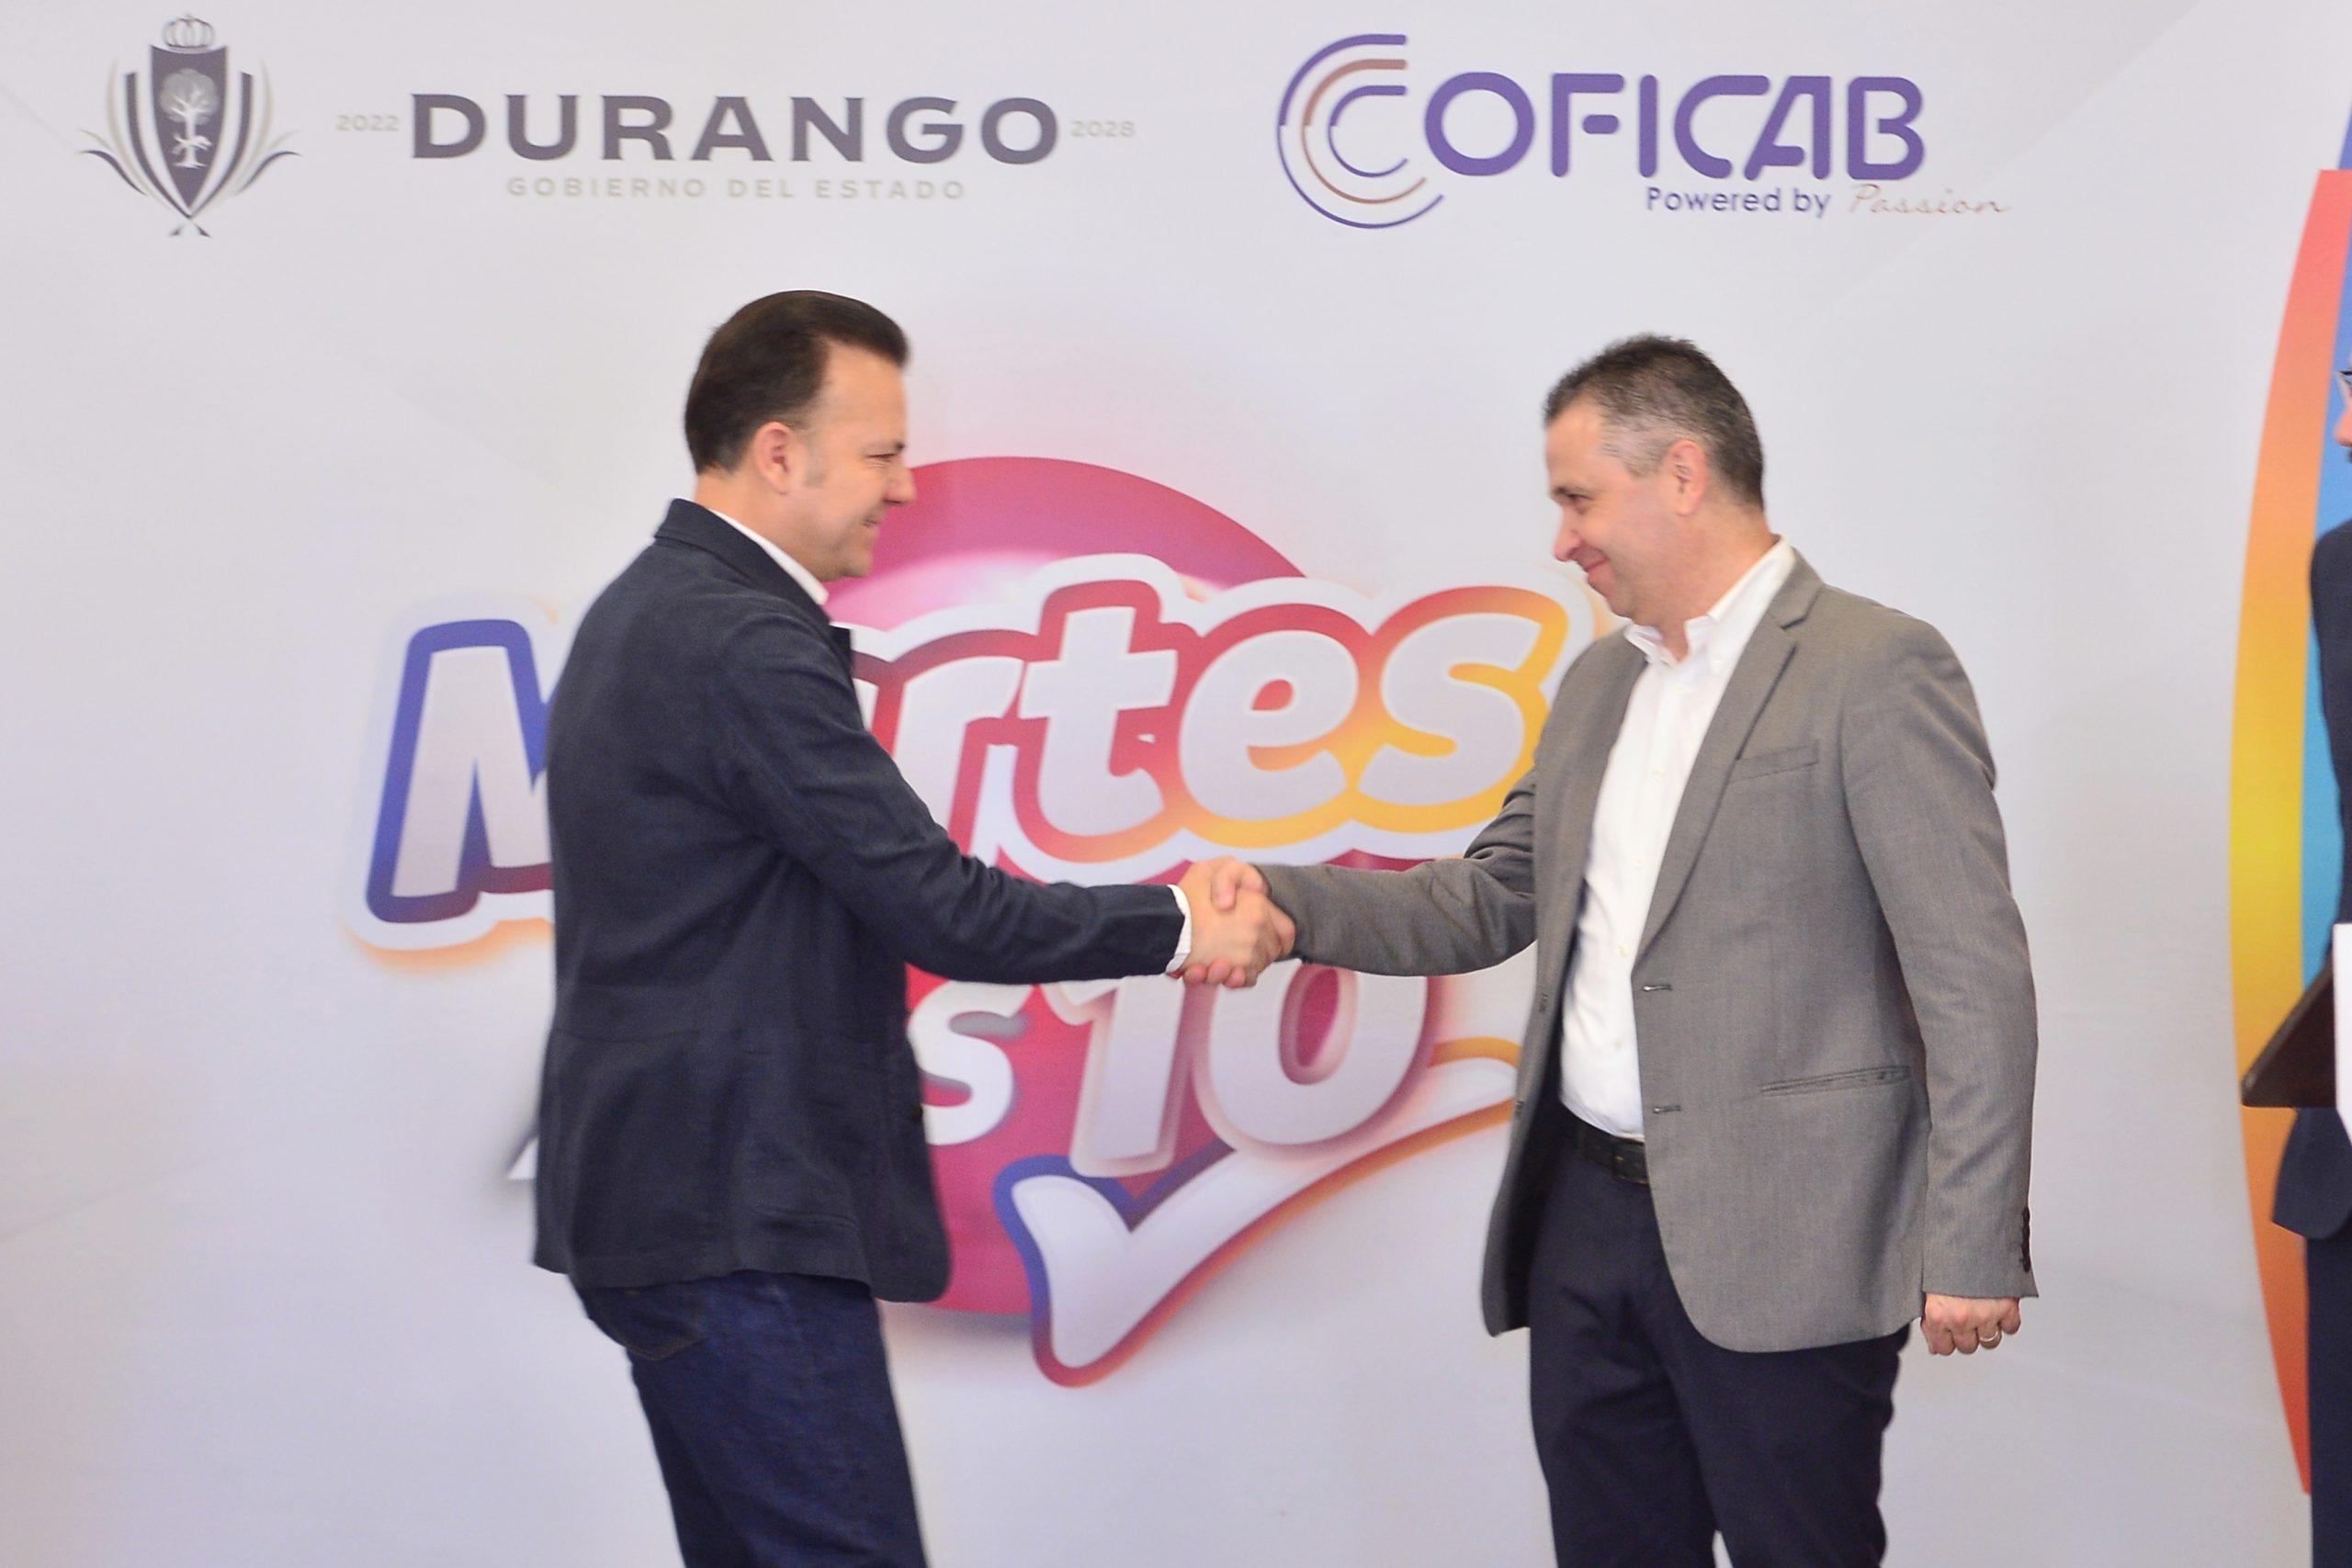 Negocios locales serán proveedores de empresa COFICAB, gracias a vinculación del Gobierno de Esteban